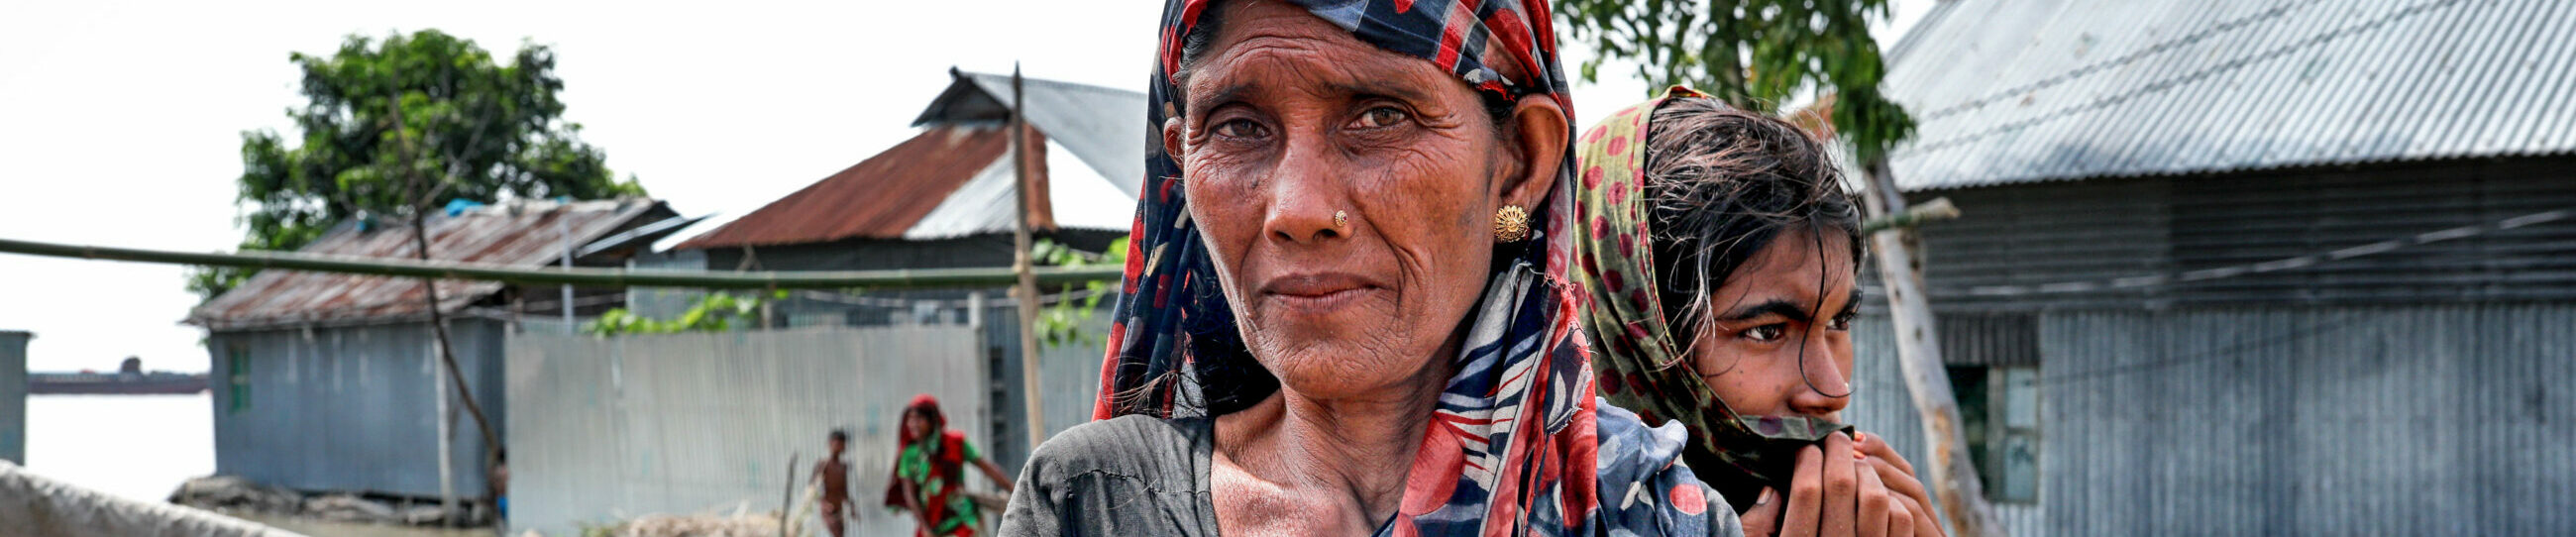 Rukhshana Bengum ist ein Flutopfer. Die jüngsten Überschwemmungen haben ihr Haus und ihr Erntefeld zerstört. Sie lebt jetzt mit ihren Kindern und ihrem Ehemann in einer Notunterkunft.